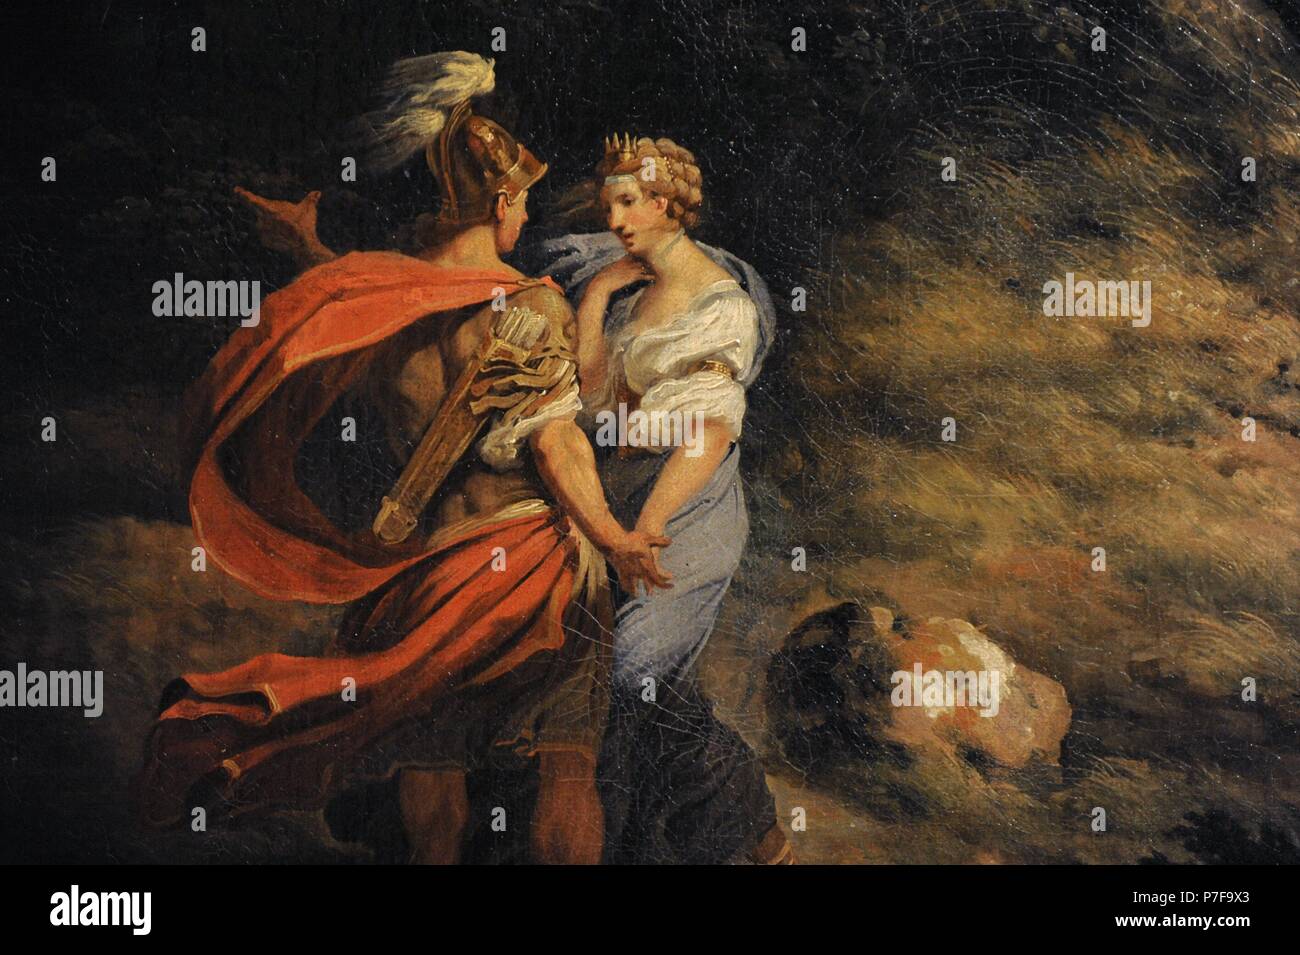 Thomas Jones (1742-1803). Englischer Maler. Landschaft mit Dido und Aeneas (Sturm), 1769. Detail. Die Eremitage. Sankt Petersburg. Russland. Stockfoto